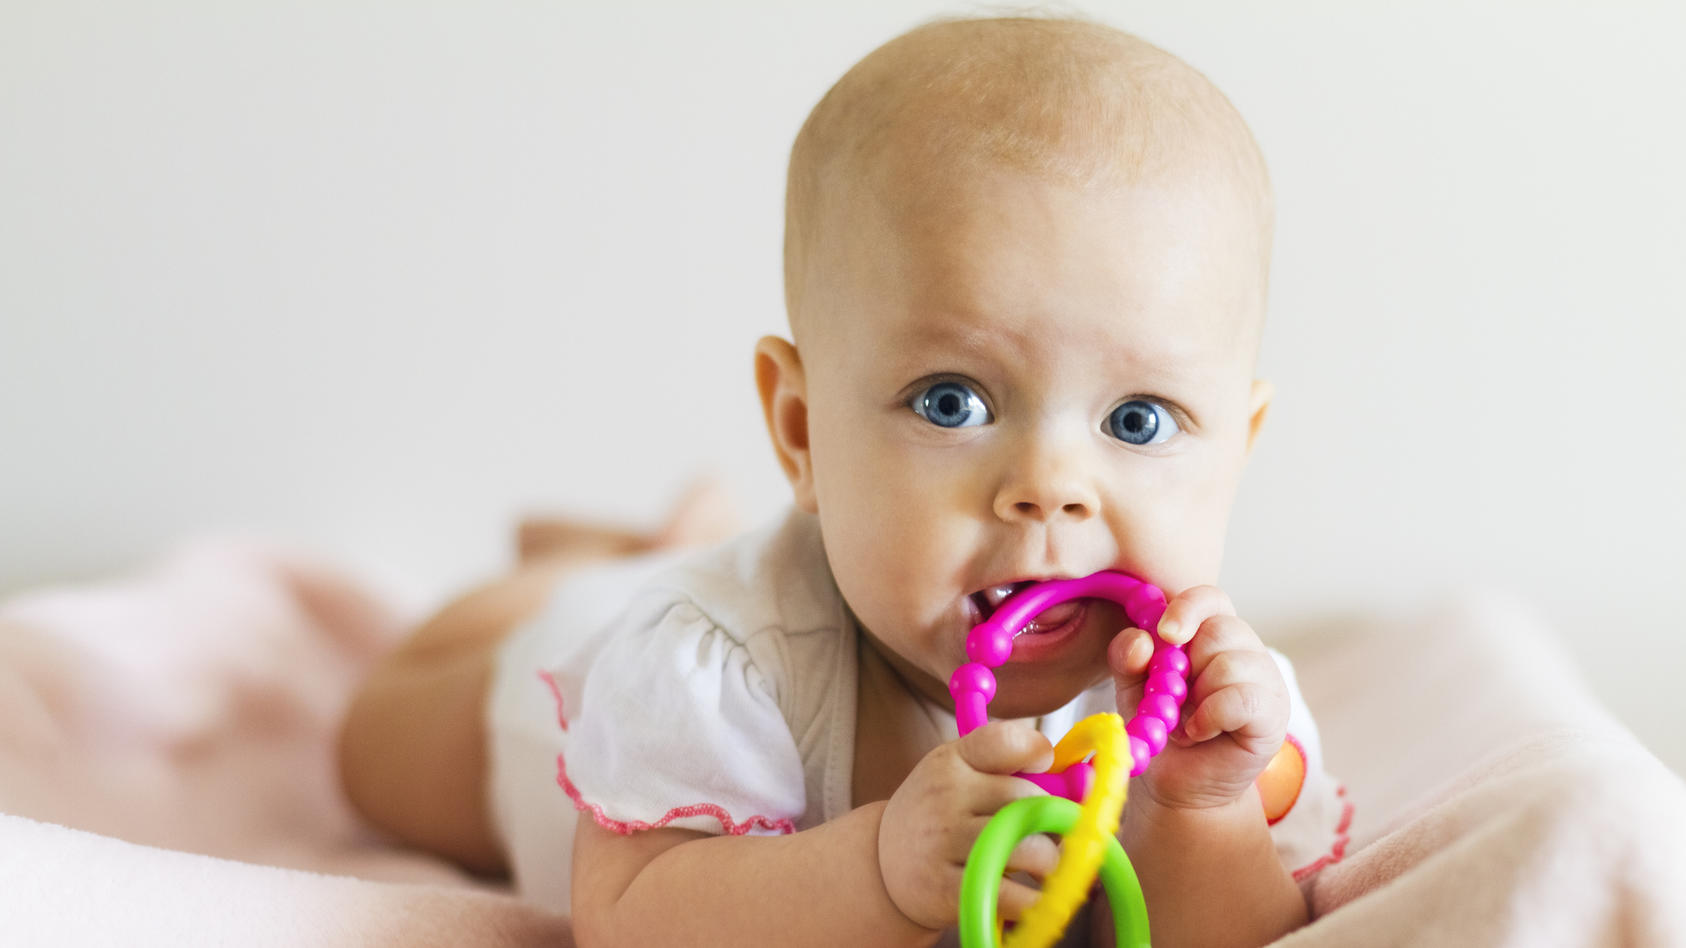 Babyspielzeug ab 6 Monaten: Worauf sollten Eltern achten?